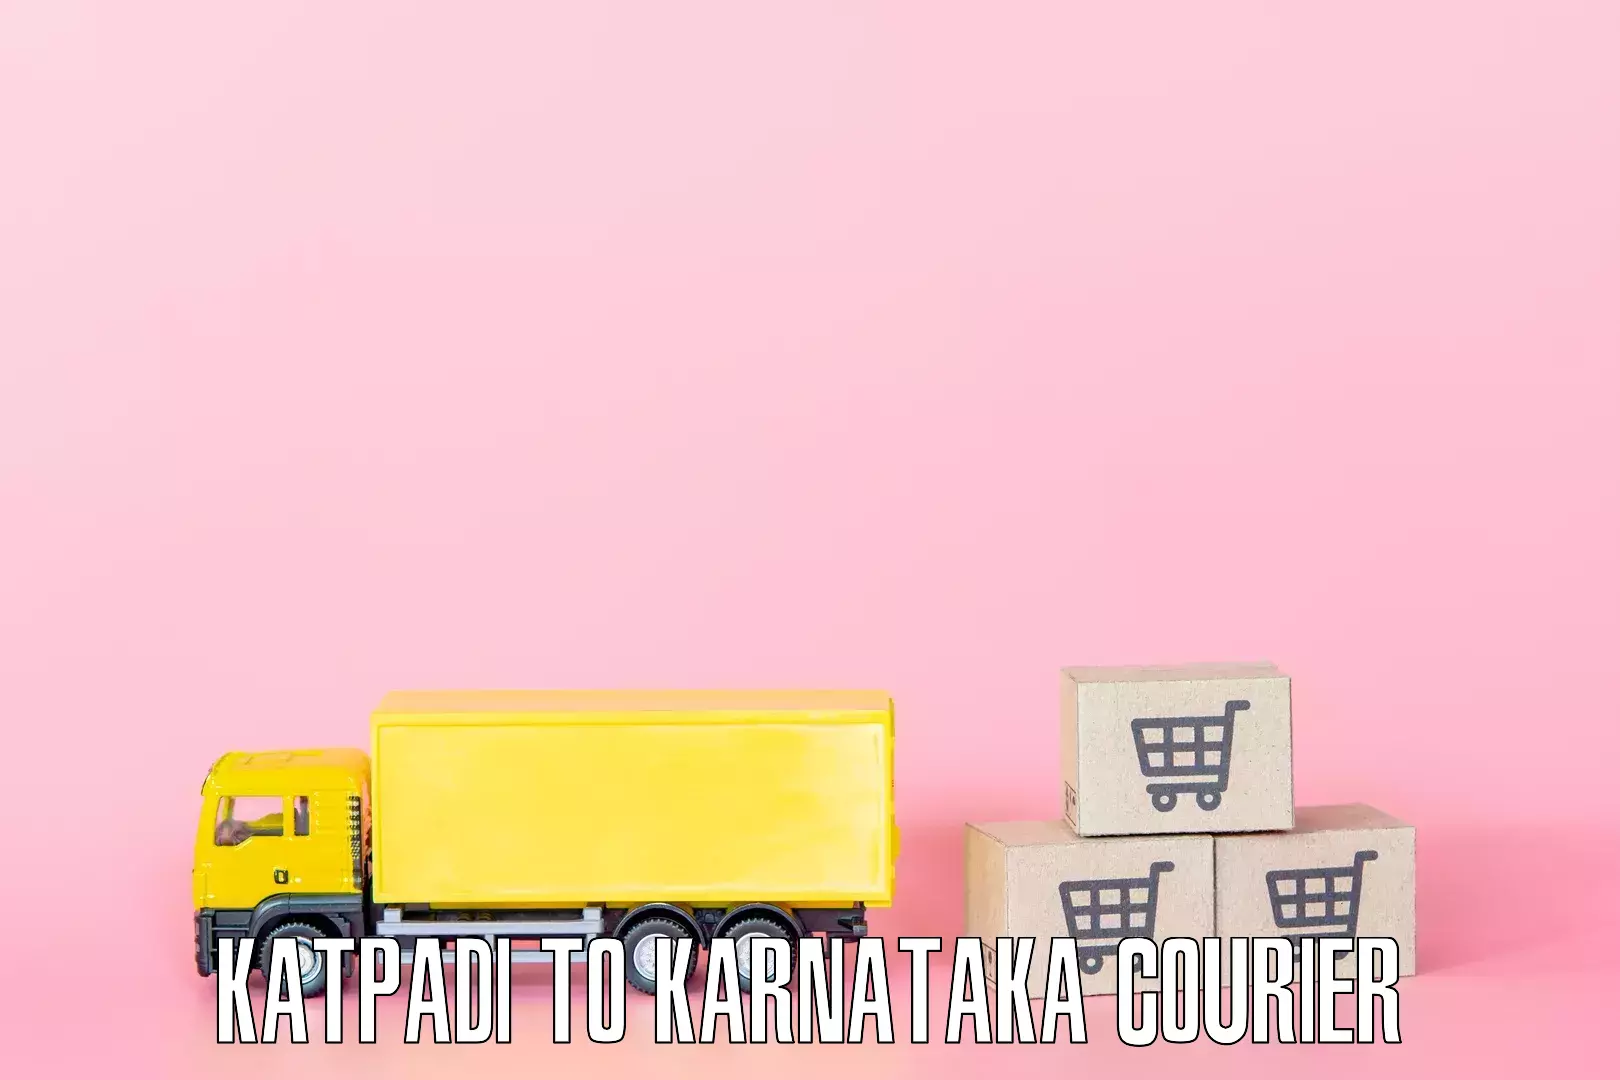 Tailored moving services Katpadi to Karnataka